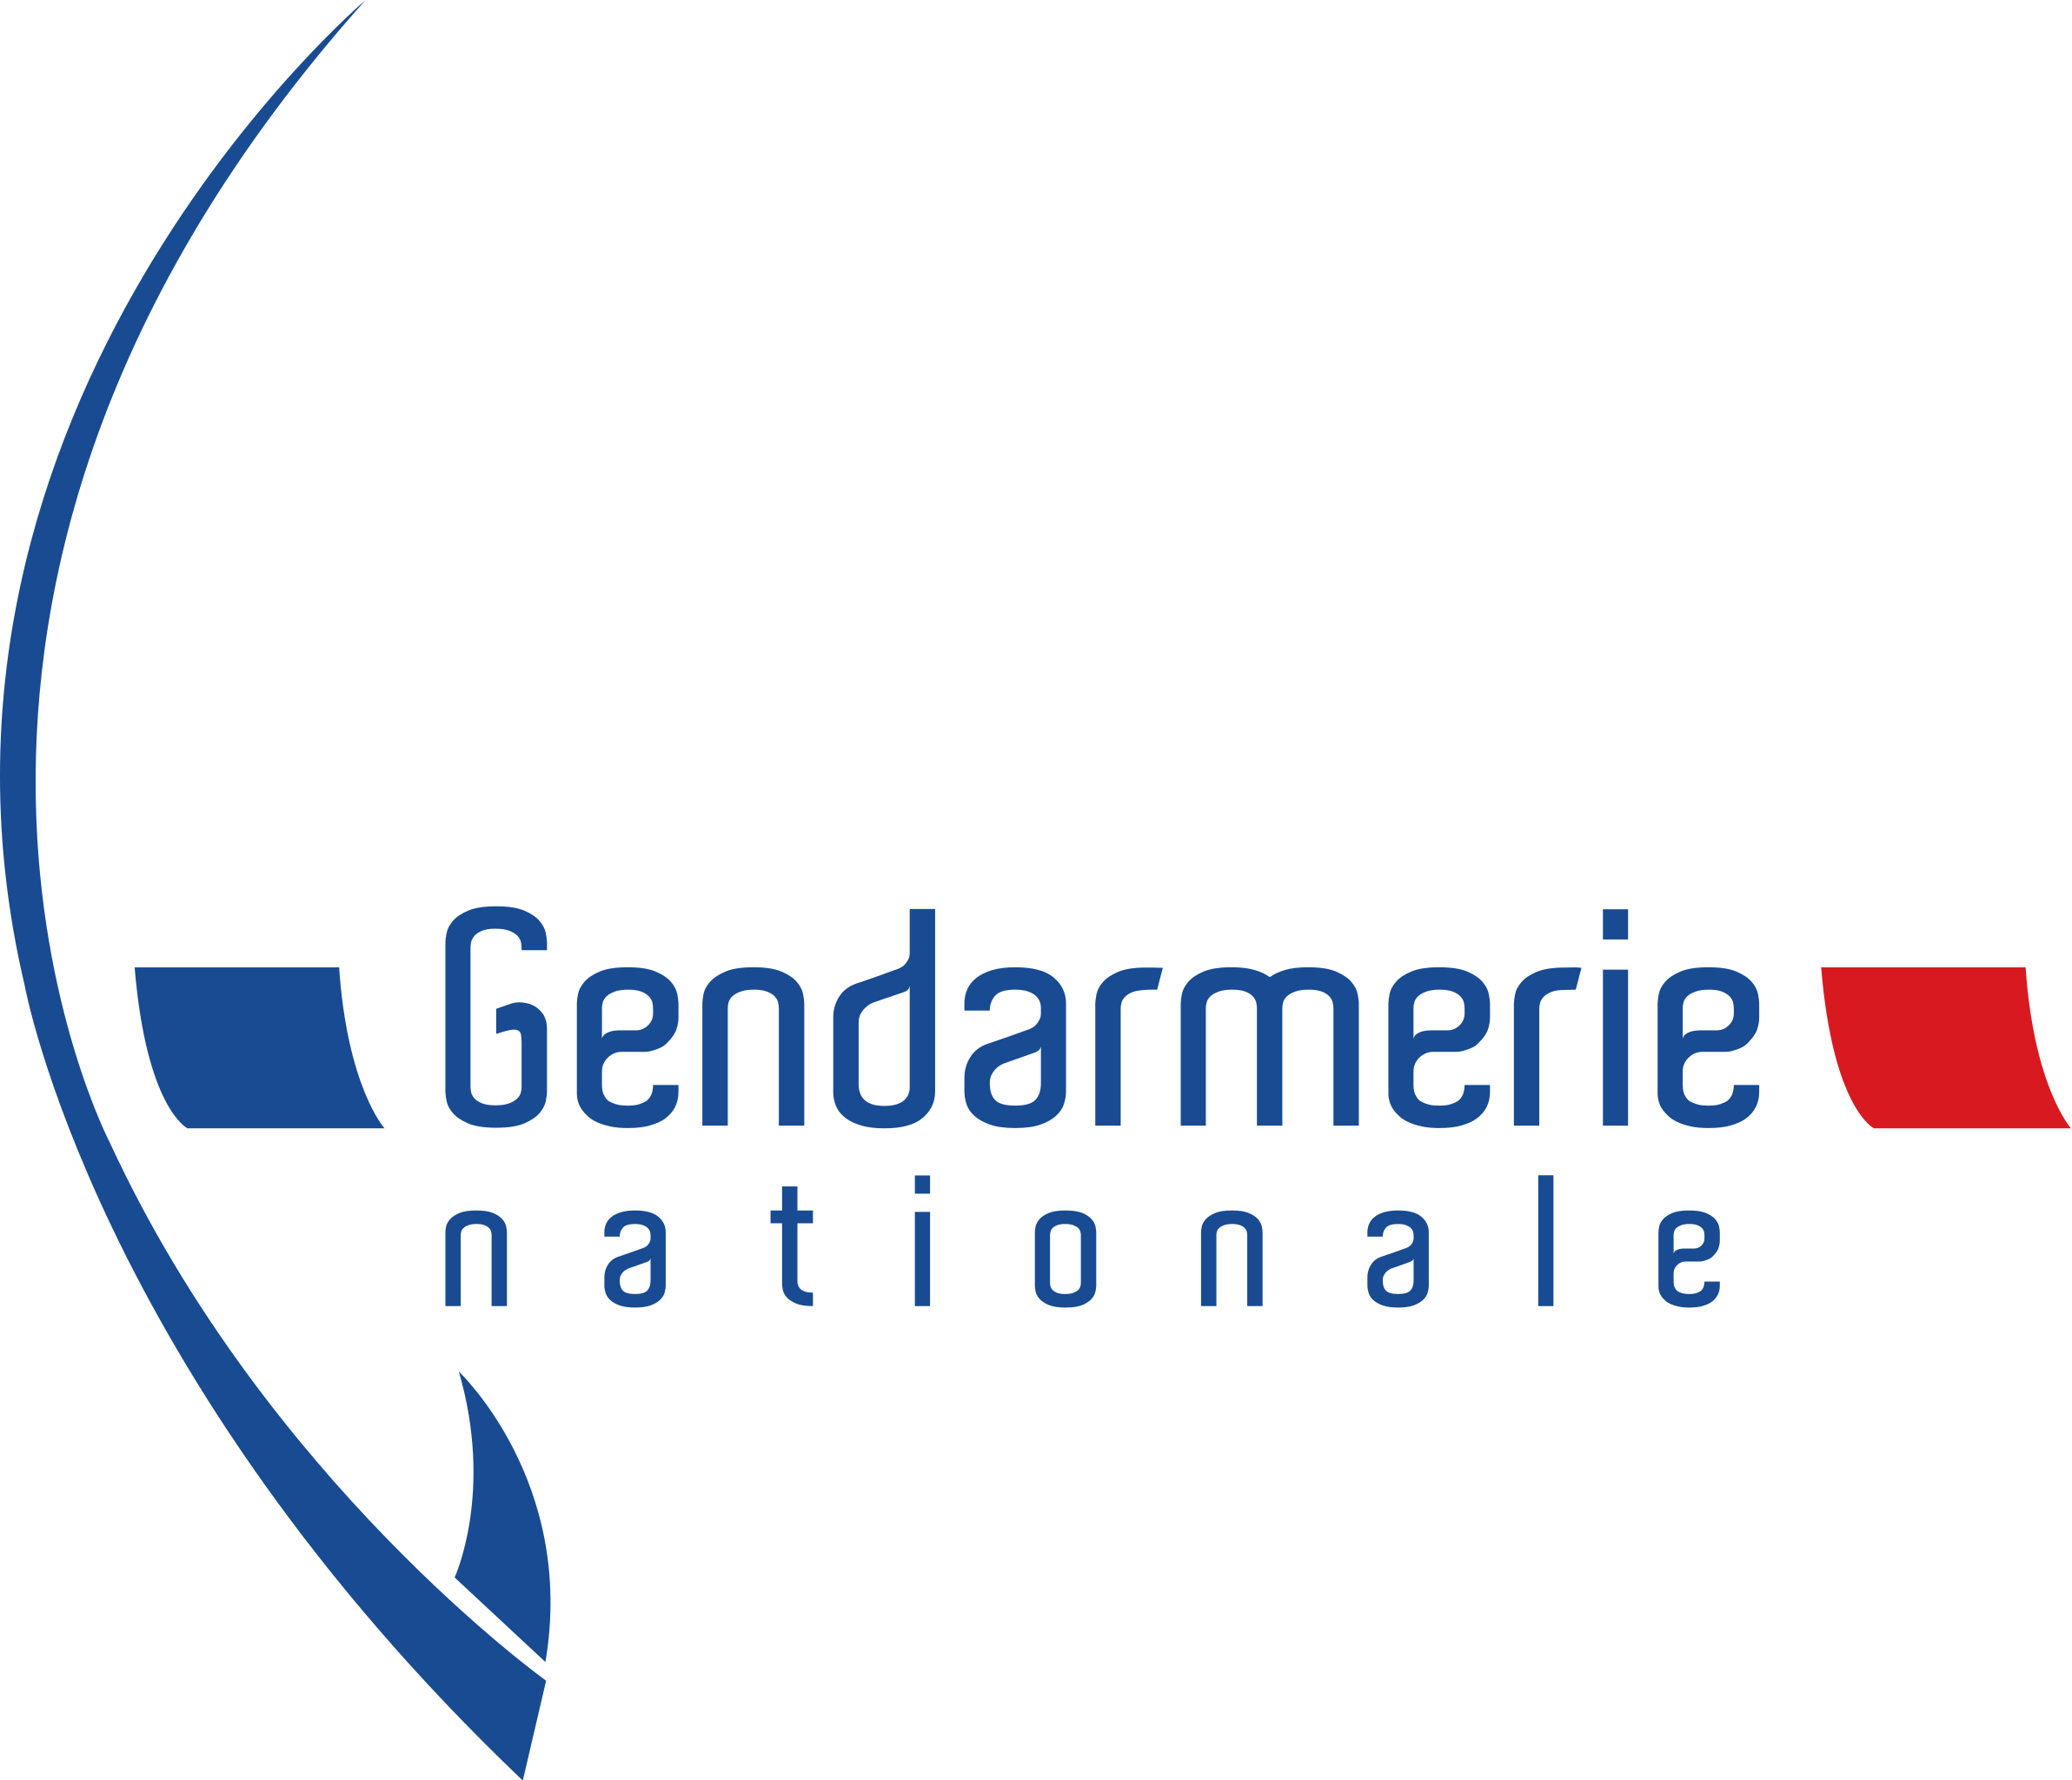 Tout_droit_partenaire_gendarmerie_logo